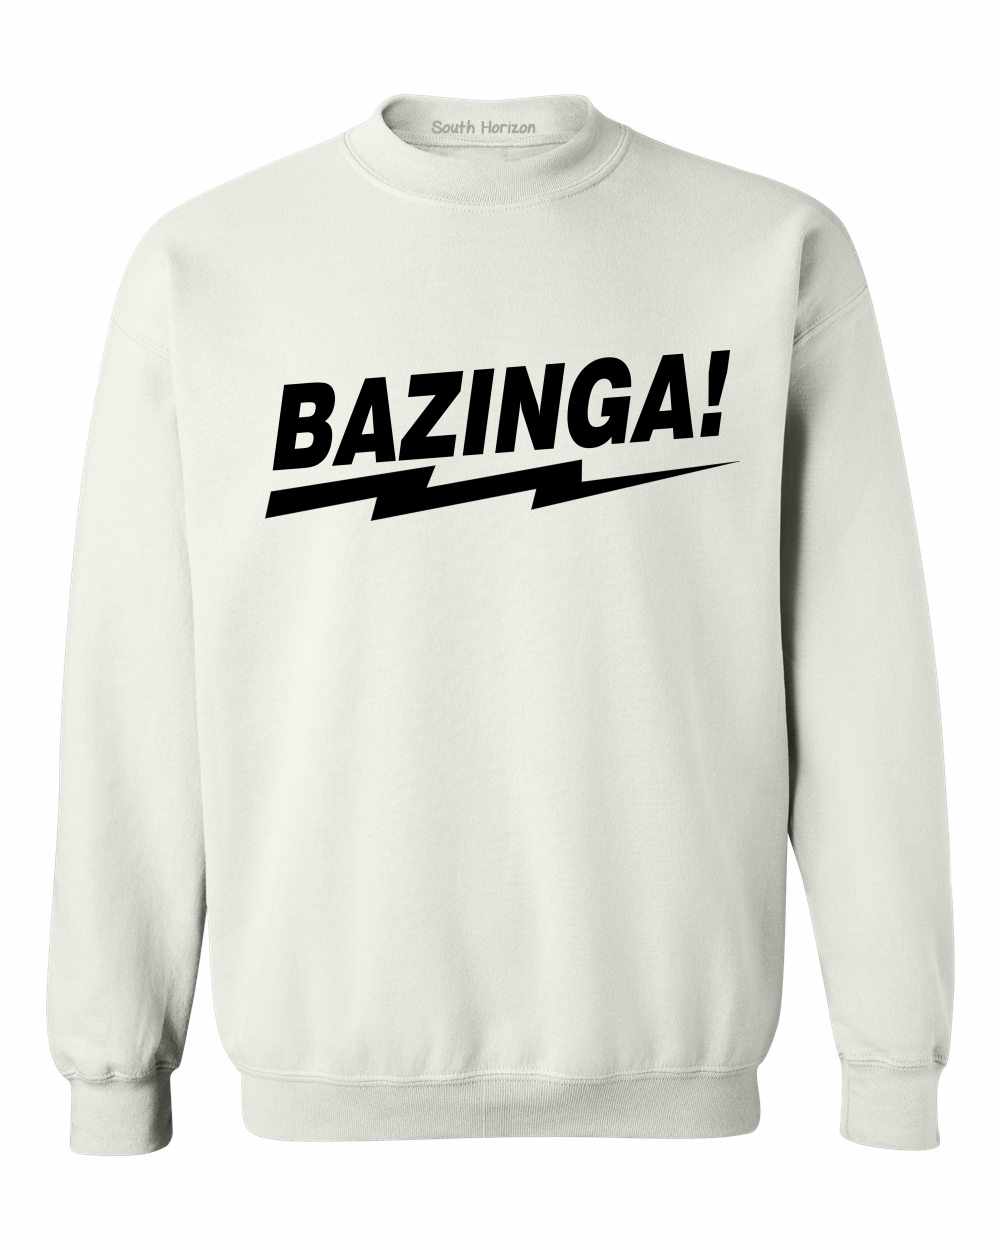 BAZINGA! on SweatShirt (#829-11)